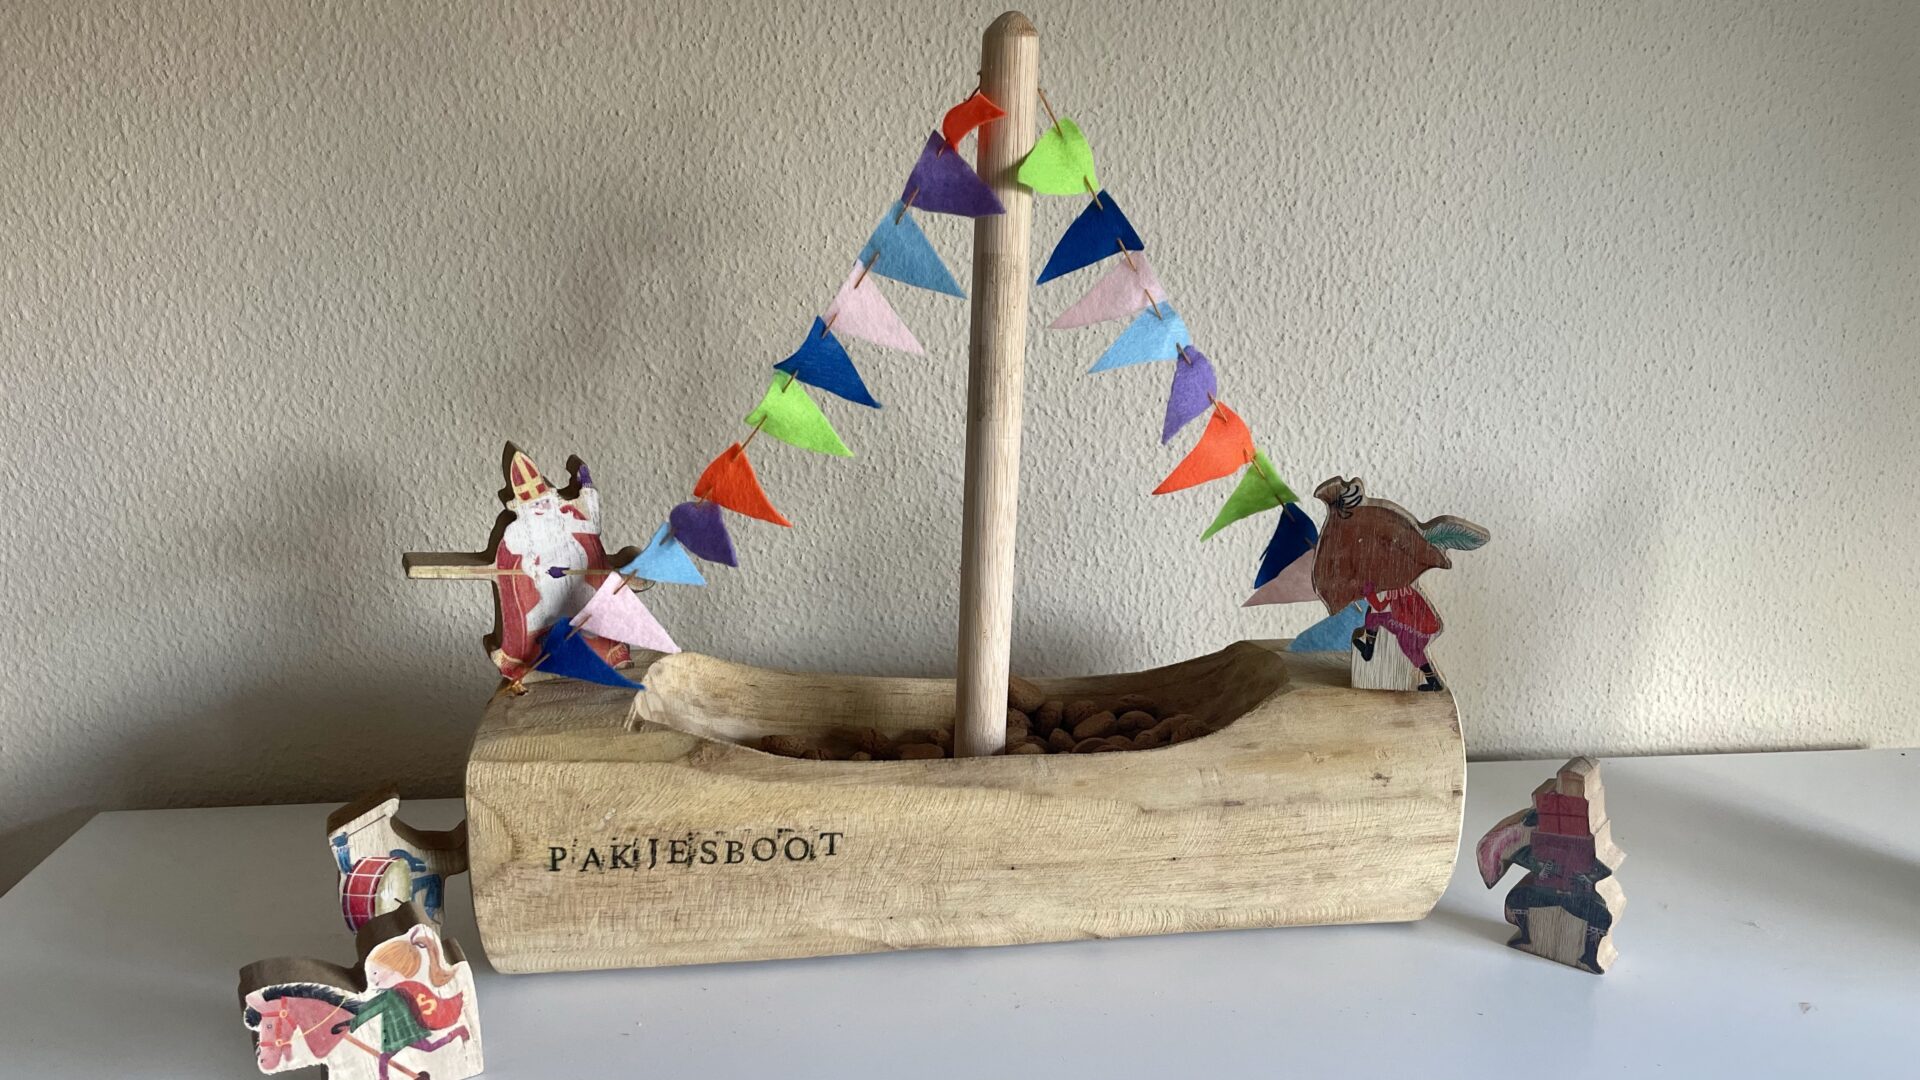 voorbeeld landelijk Markeer DIY: Maak je eigen houten pakjesboot voor Sinterklaas -  KinderKoopjesjager.nl